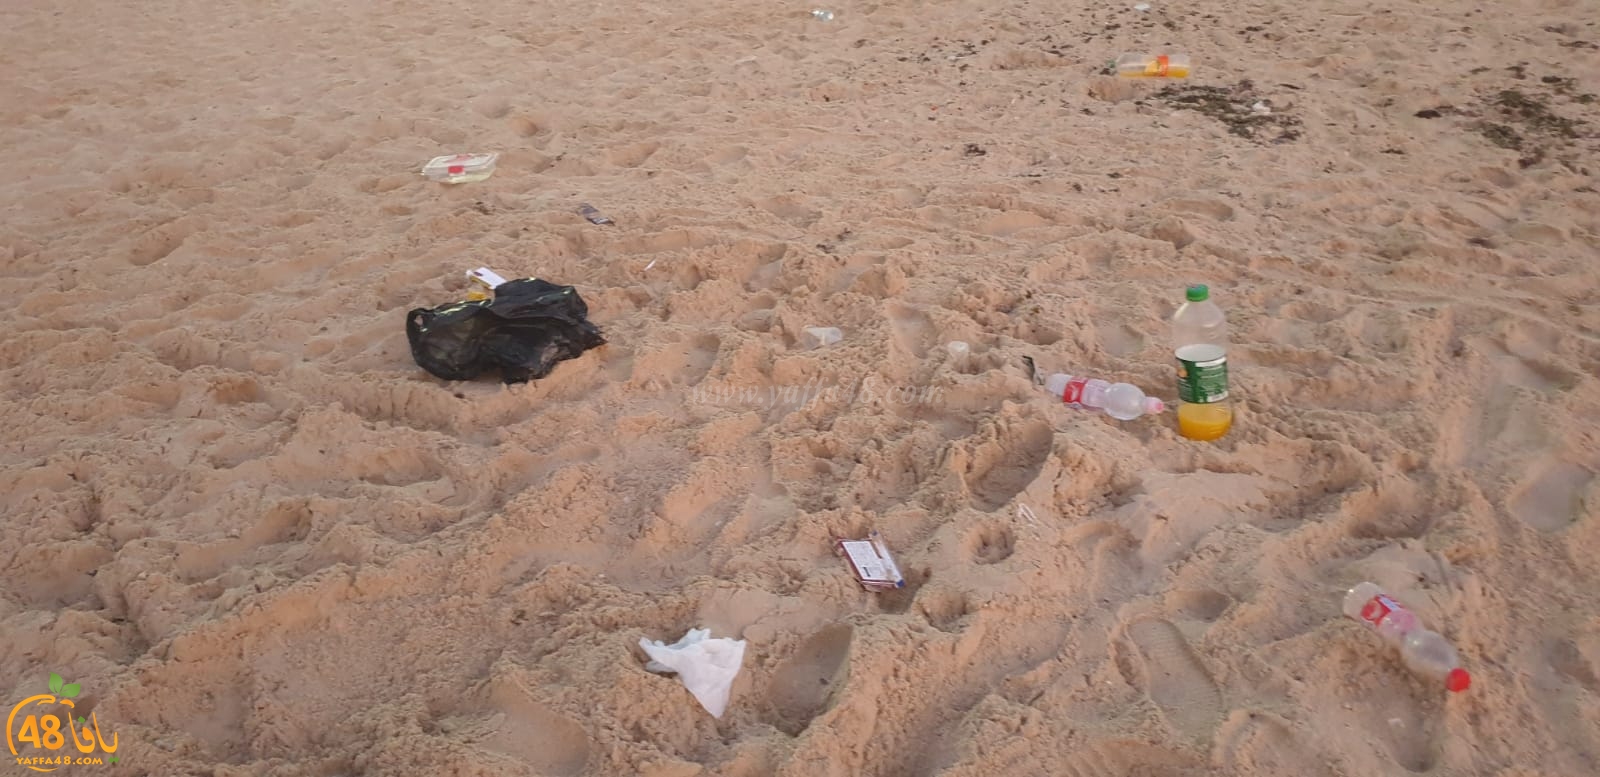 يافا: من المسؤول عن مشاهد تكدّس القمامة والنفايات على شواطئ المدينة ؟!